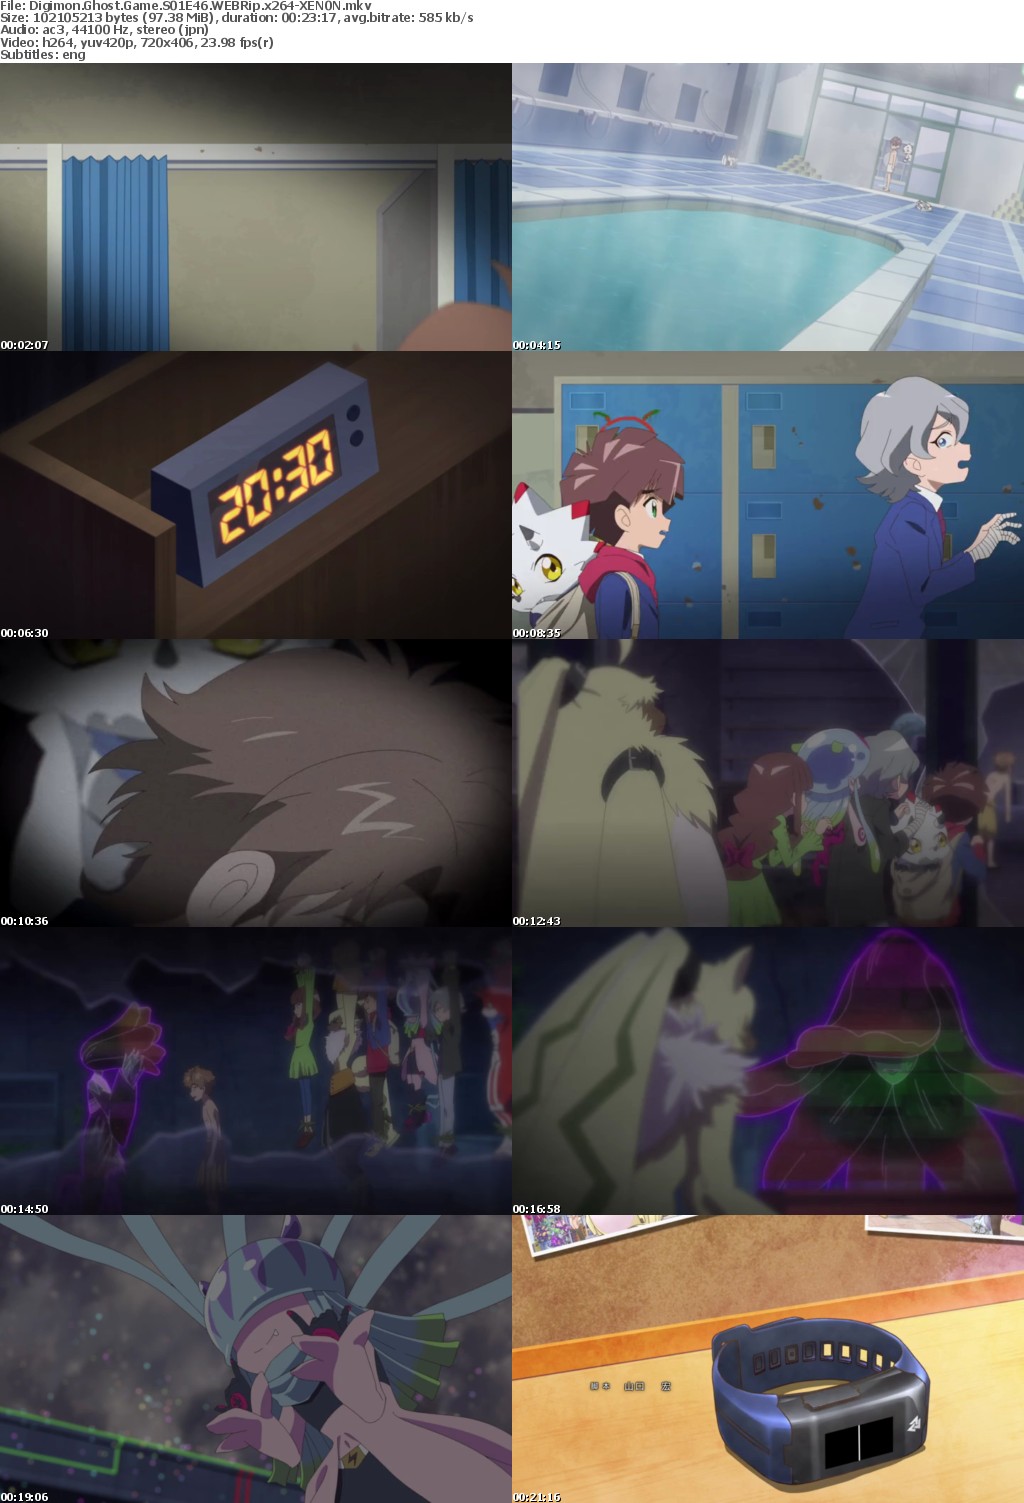 Digimon Ghost Game S01E46 WEBRip x264-XEN0N